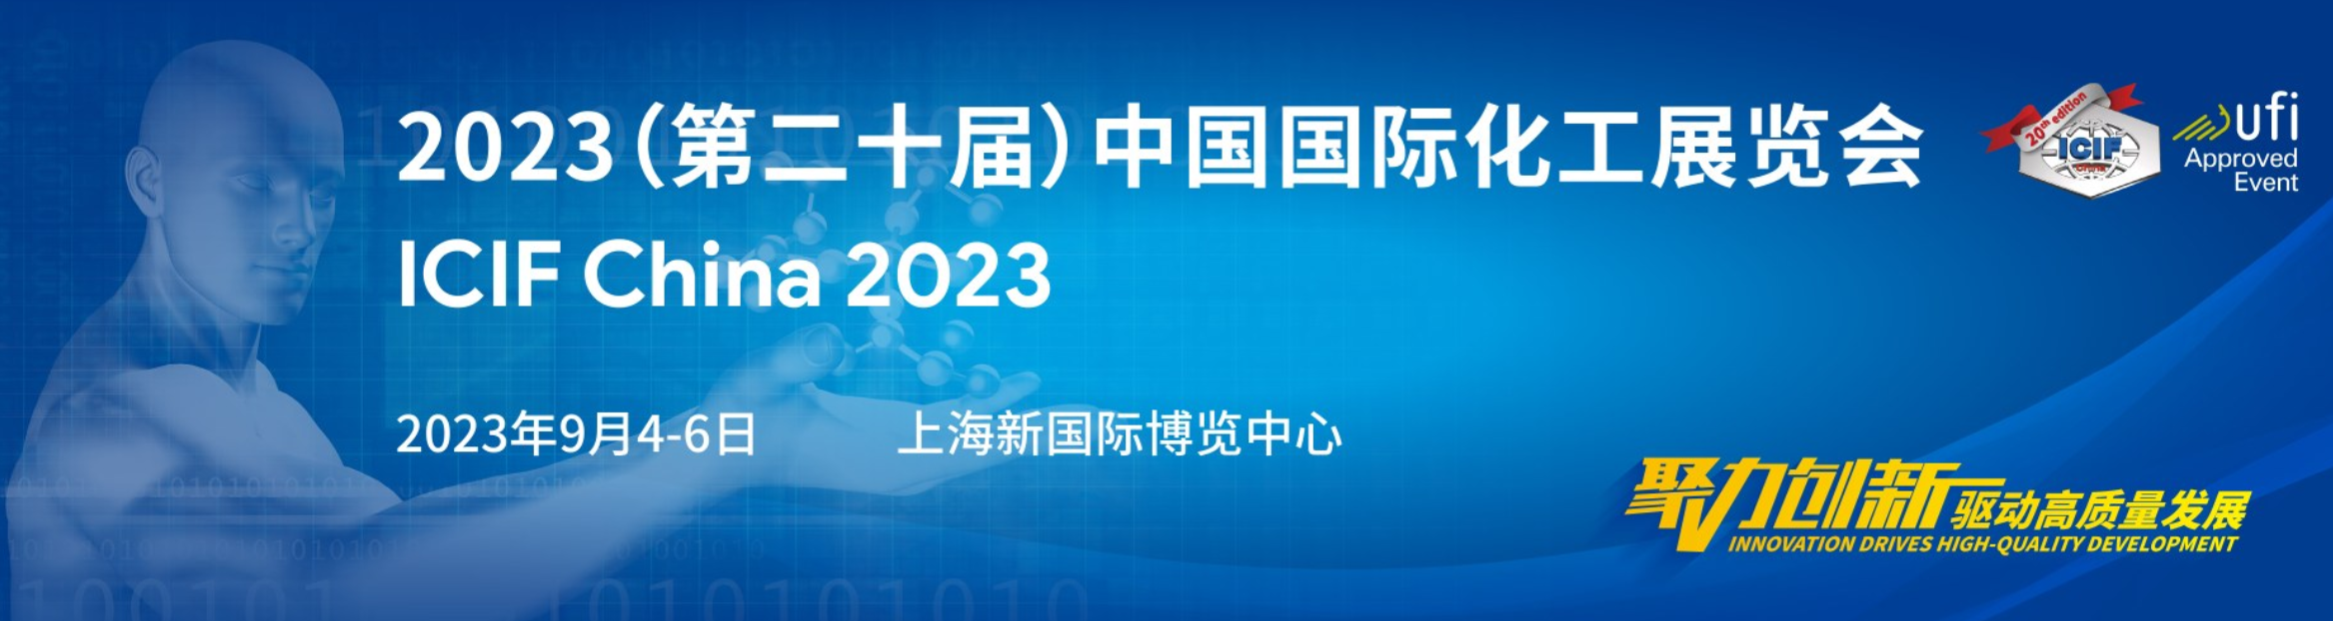 大連寶祥包裝制品有限公司誠邀您參加 ICIF China 2023 中國國際化工展覽會